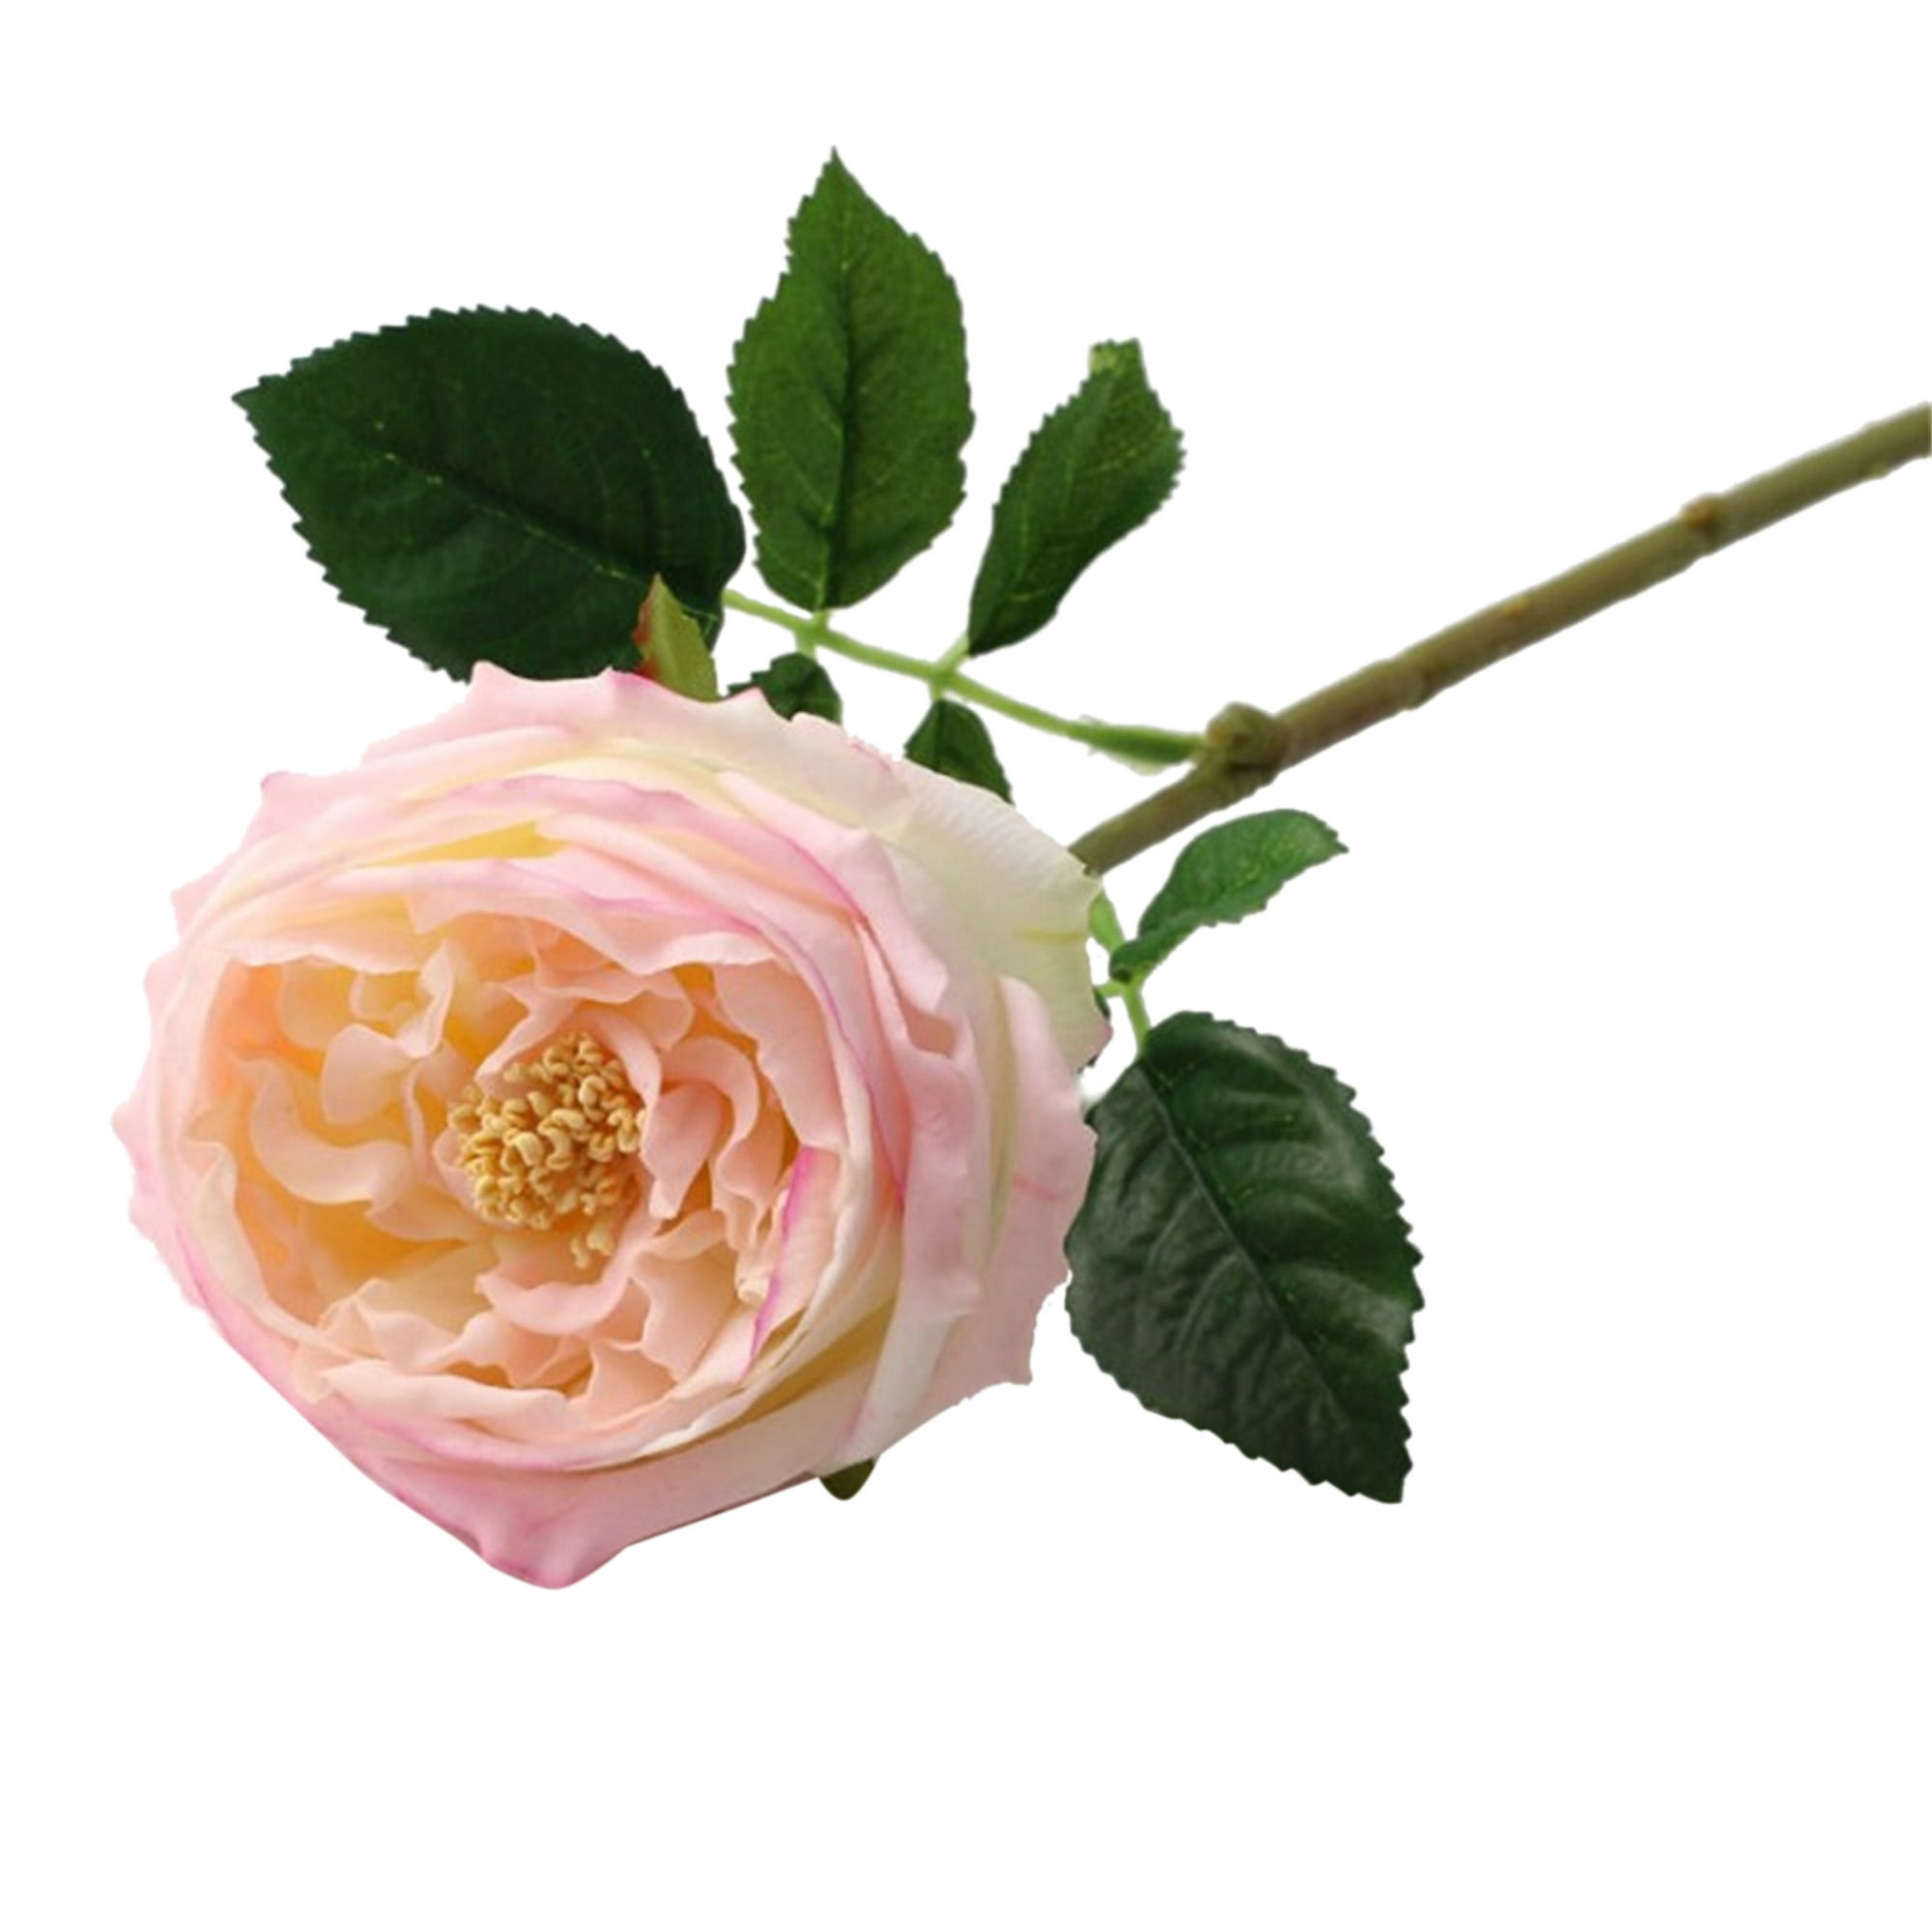  4 ramos de flores artificiales – Ramos de rosas artificiales –  No se decoloran flores artificiales con tallos – Ramo falso para arreglos  florales sintéticos, decoración de bodas, centros de mesa 